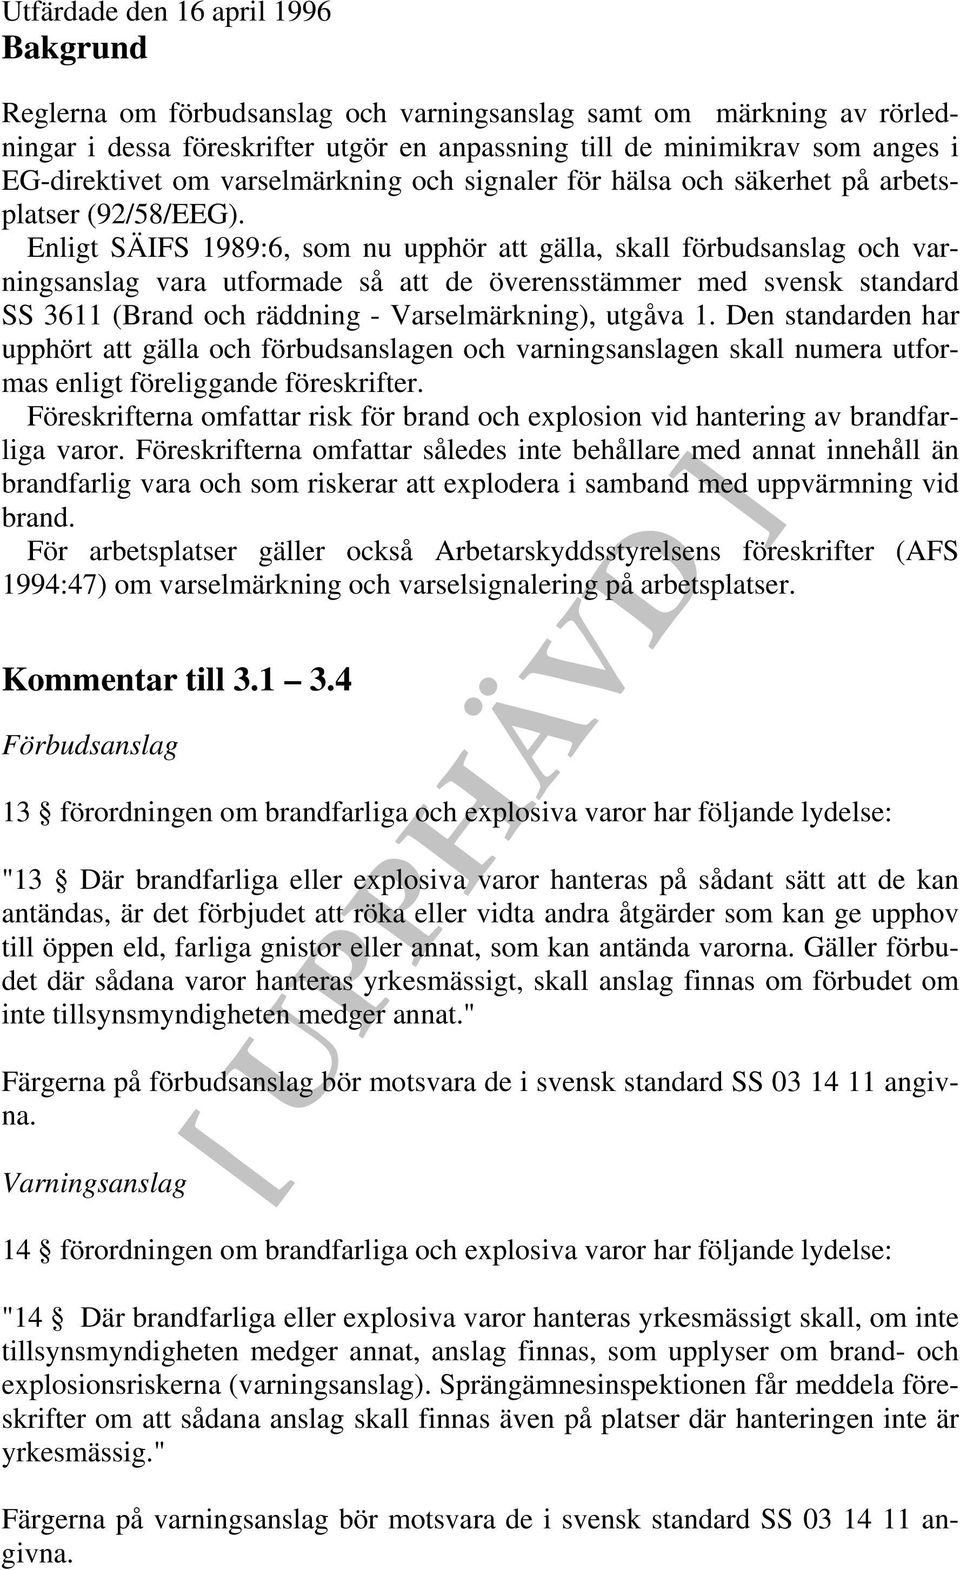 Enligt SÄIFS 1989:6, som nu upphör att gälla, skall förbudsanslag och varningsanslag vara utformade så att de överensstämmer med svensk standard SS 3611 (Brand och räddning - Varselmärkning), utgåva